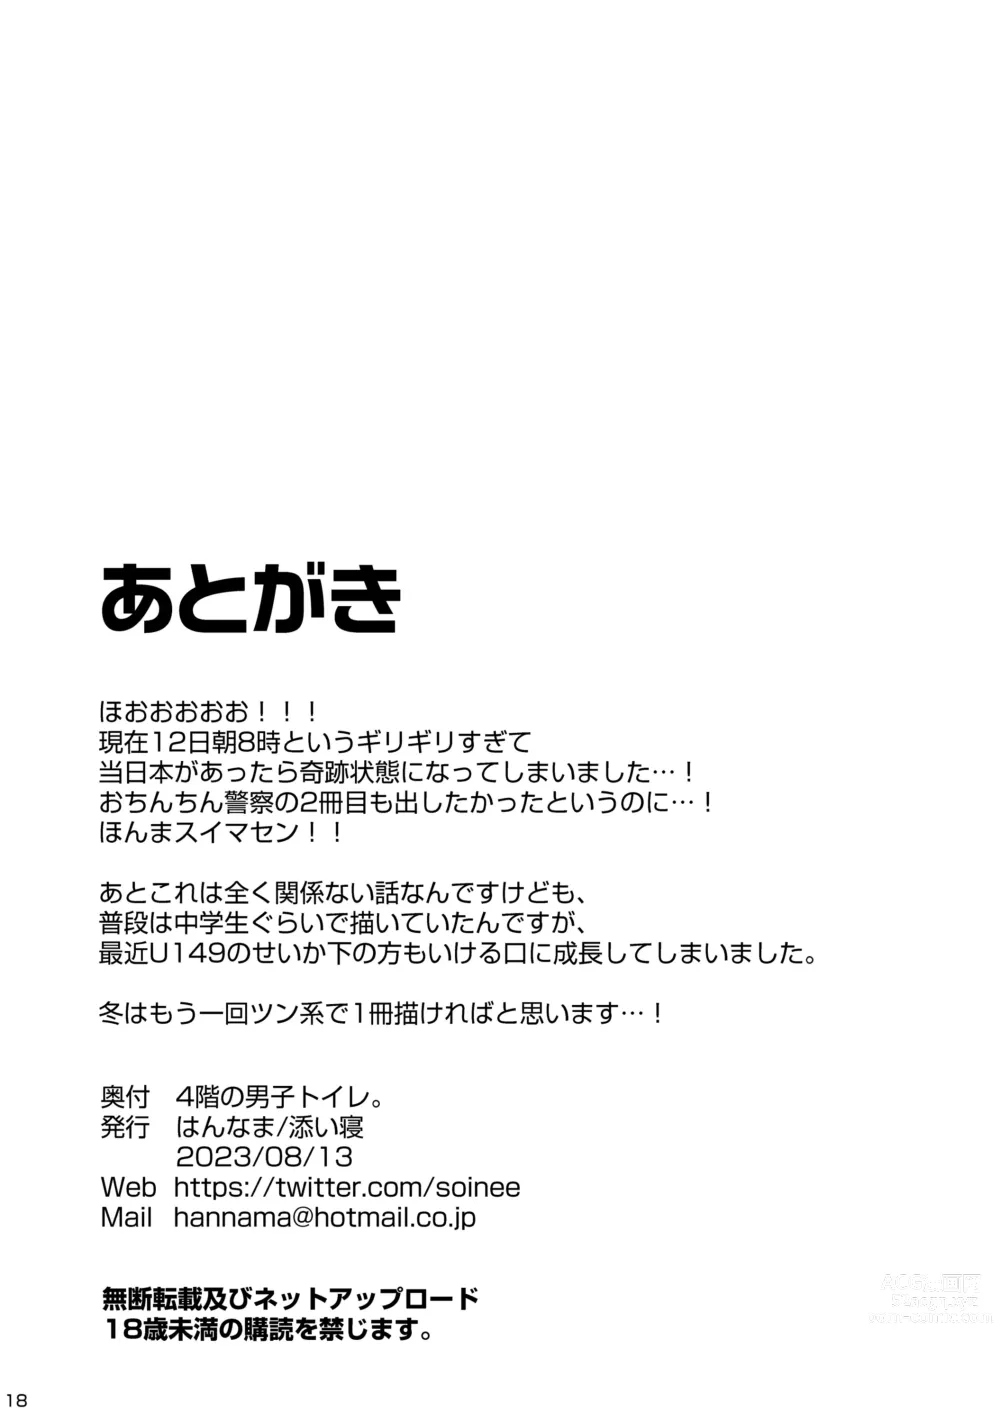 Page 18 of doujinshi 4-kai no Danshi Toile.